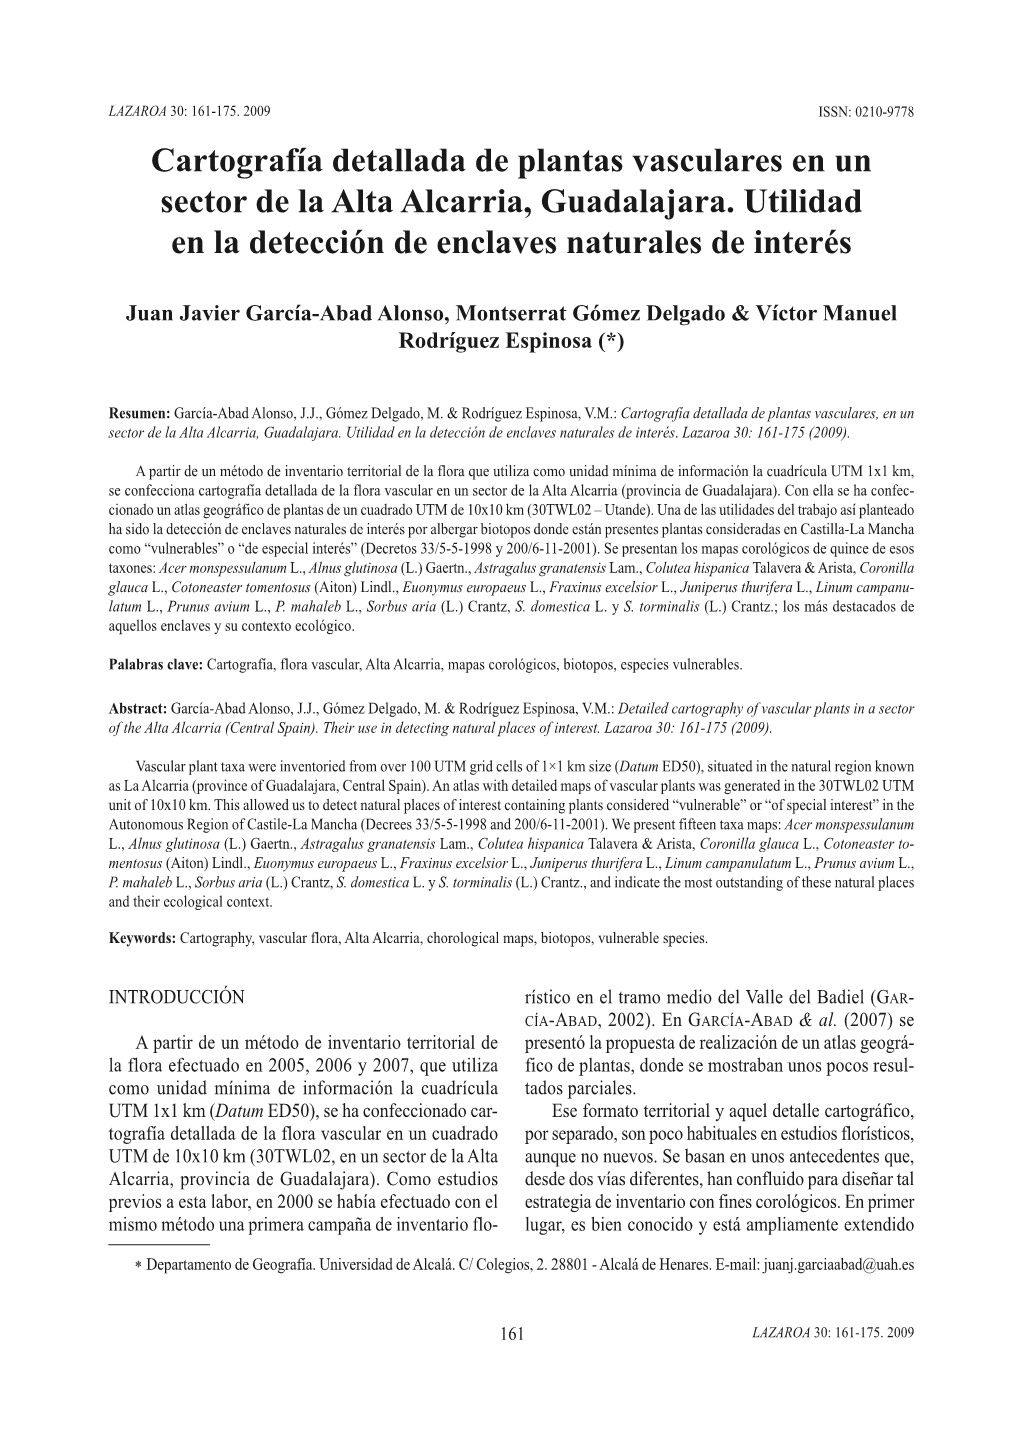 Cartografía Detallada De Plantas Vasculares En Un Sector De La Alta Alcarria, Guadalajara. Utilidad En La Detección De Enclaves Naturales De Interés